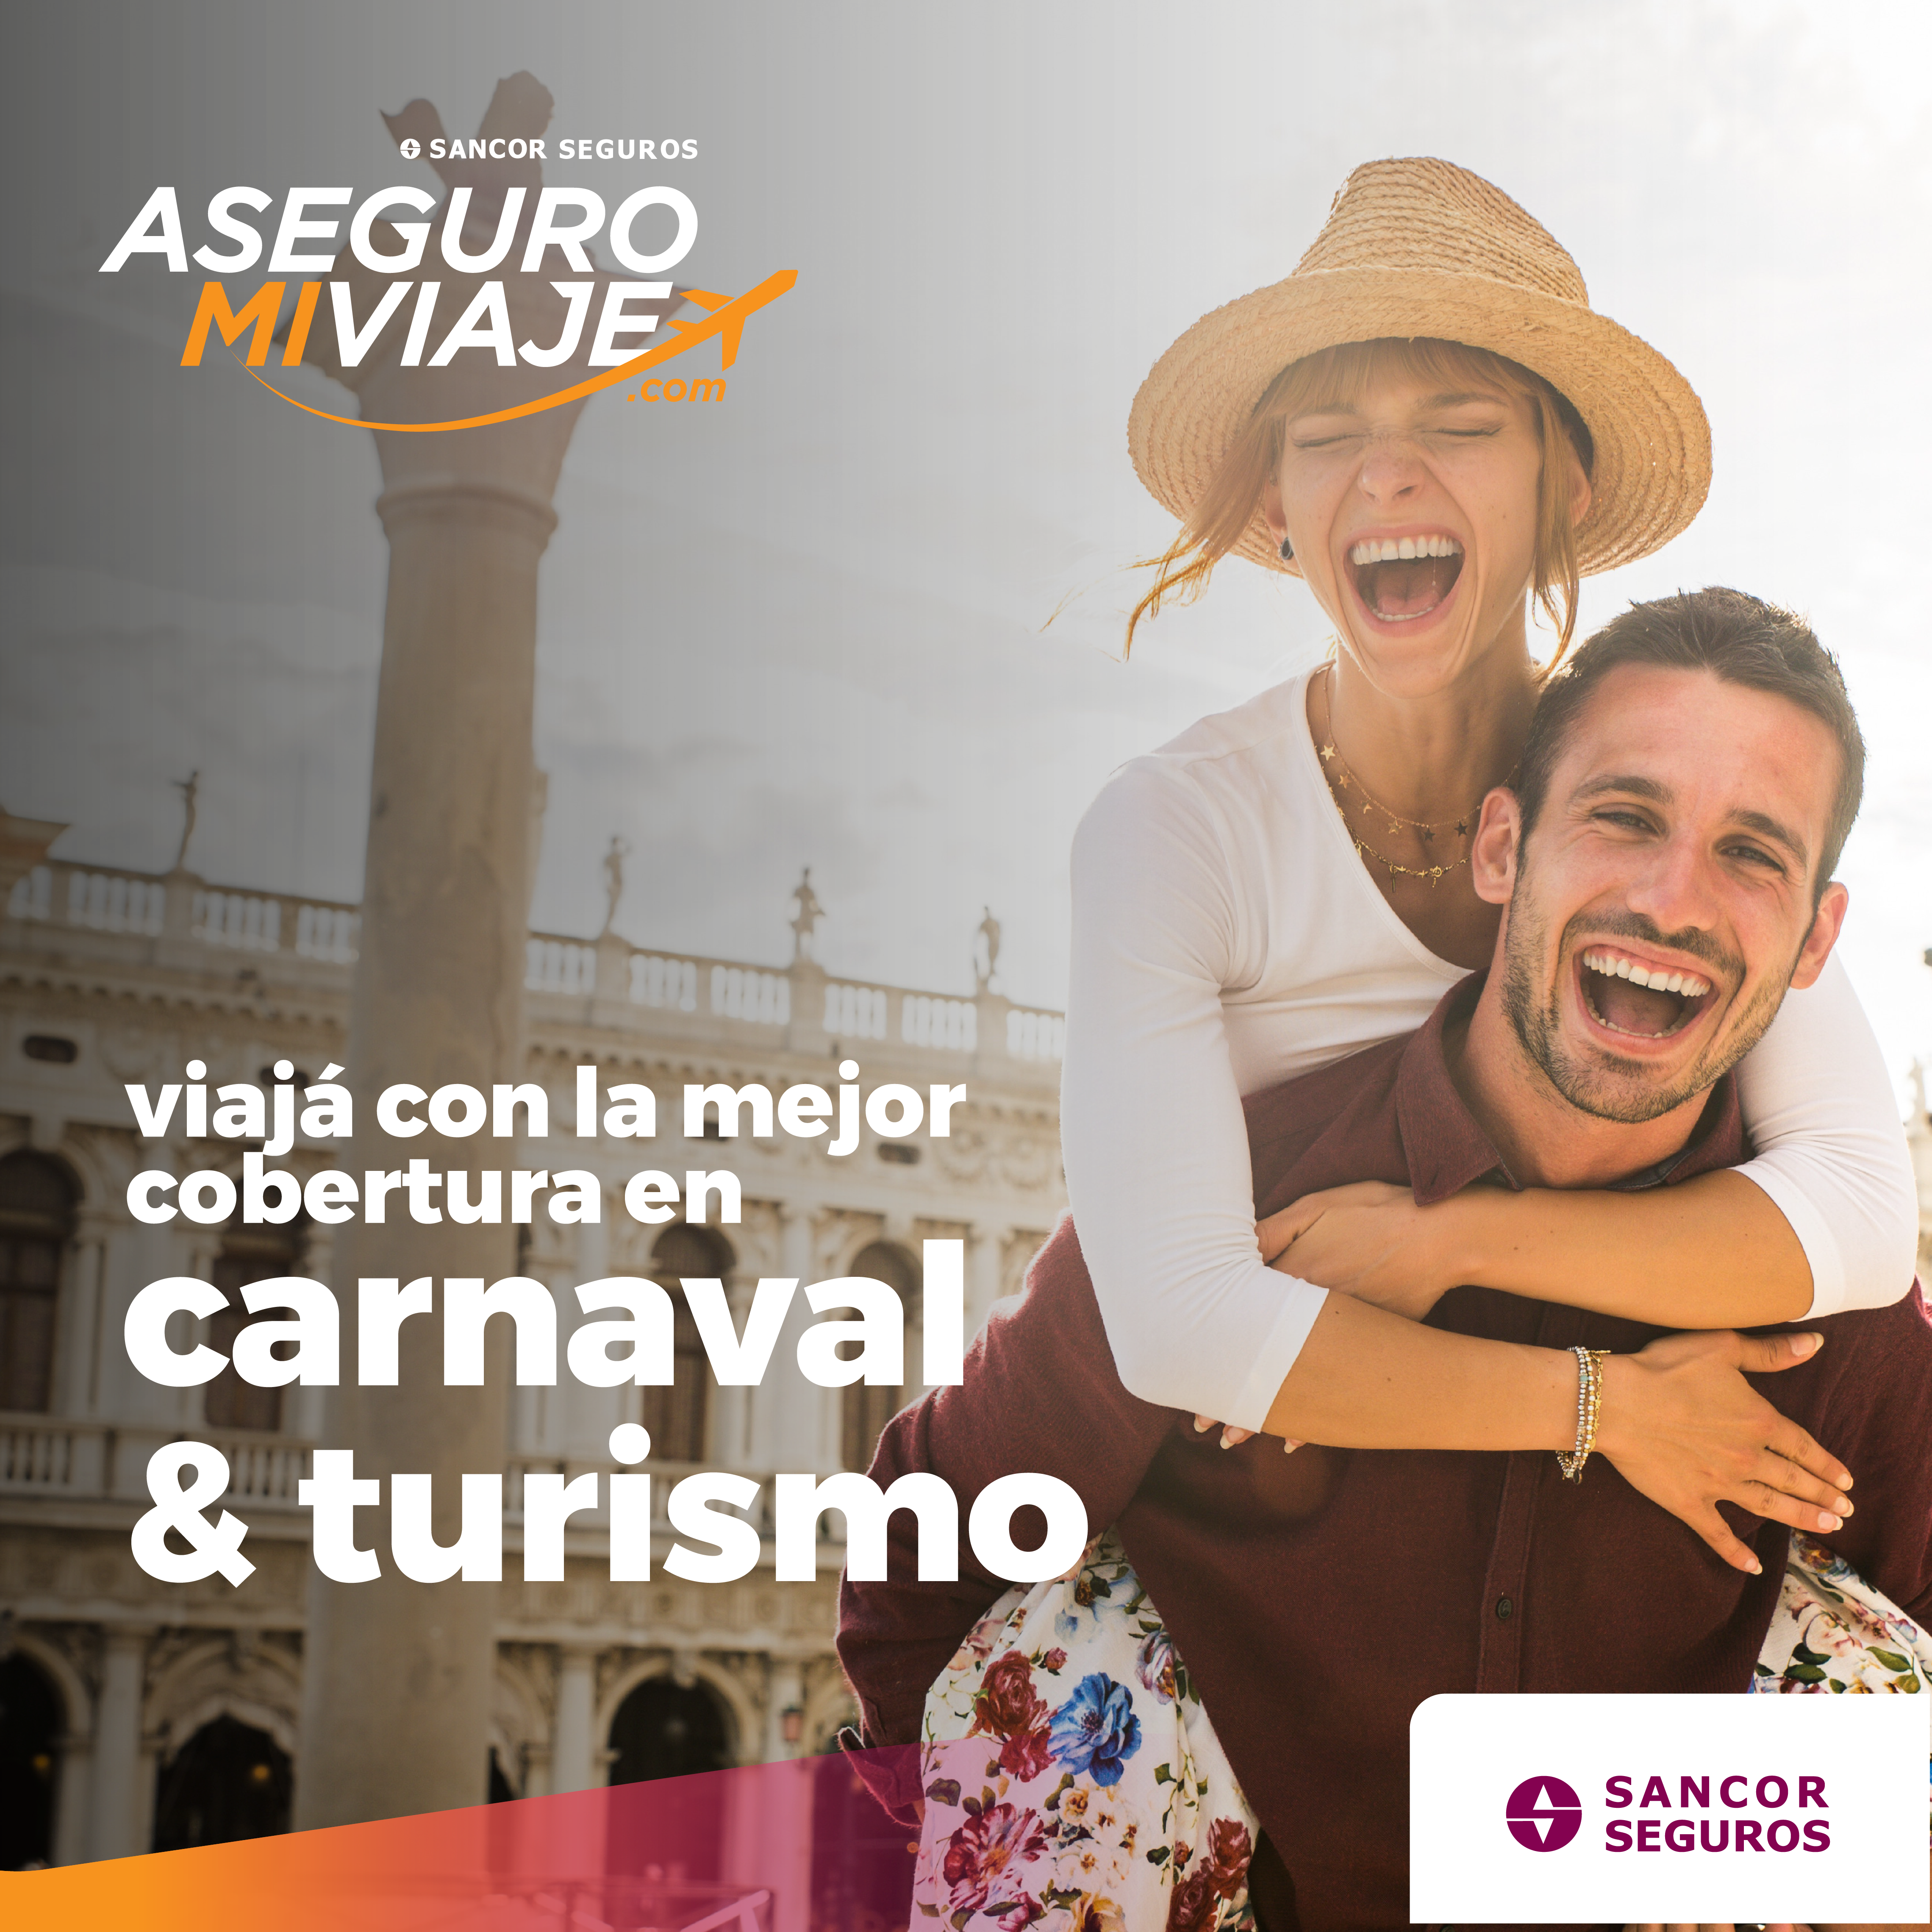 Carnaval y Turismo: ¡aprovechá los descuentos promocionales en nuestros planes!